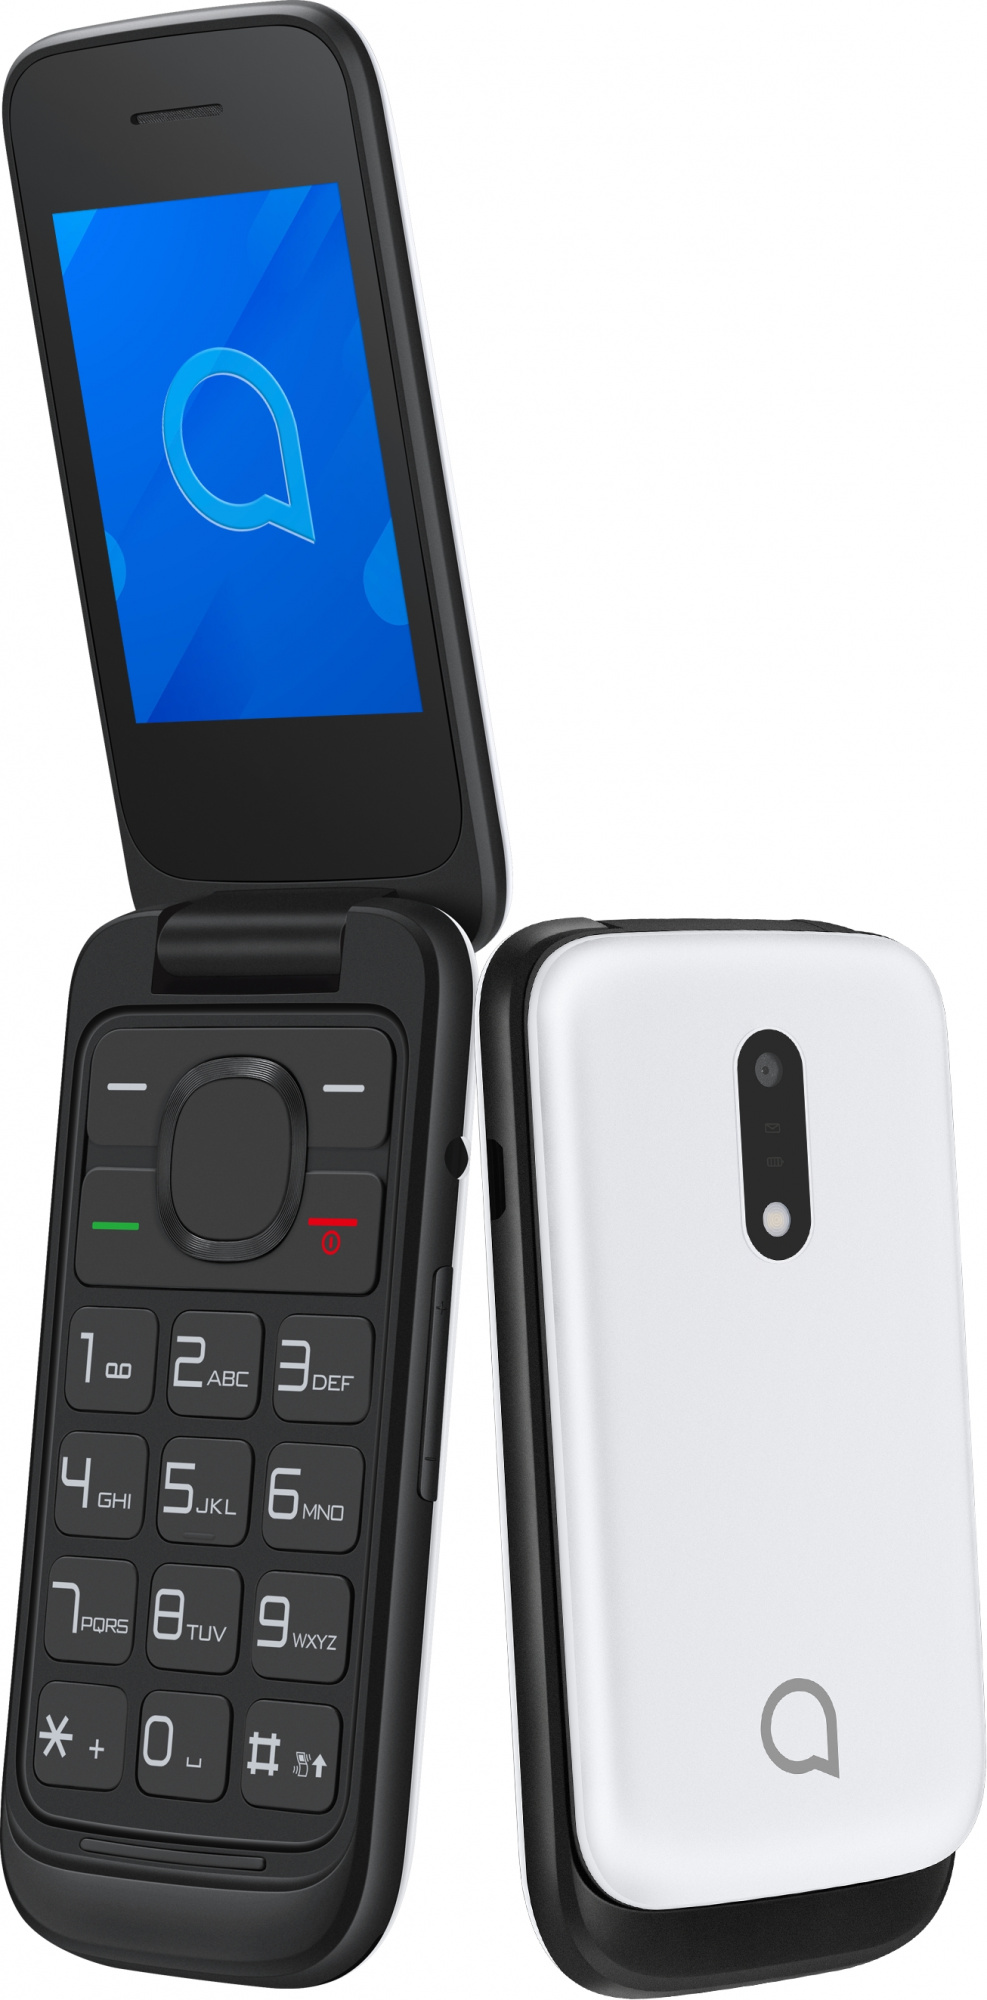 Мобильный телефон Alcatel 2057D OneTouch, белый